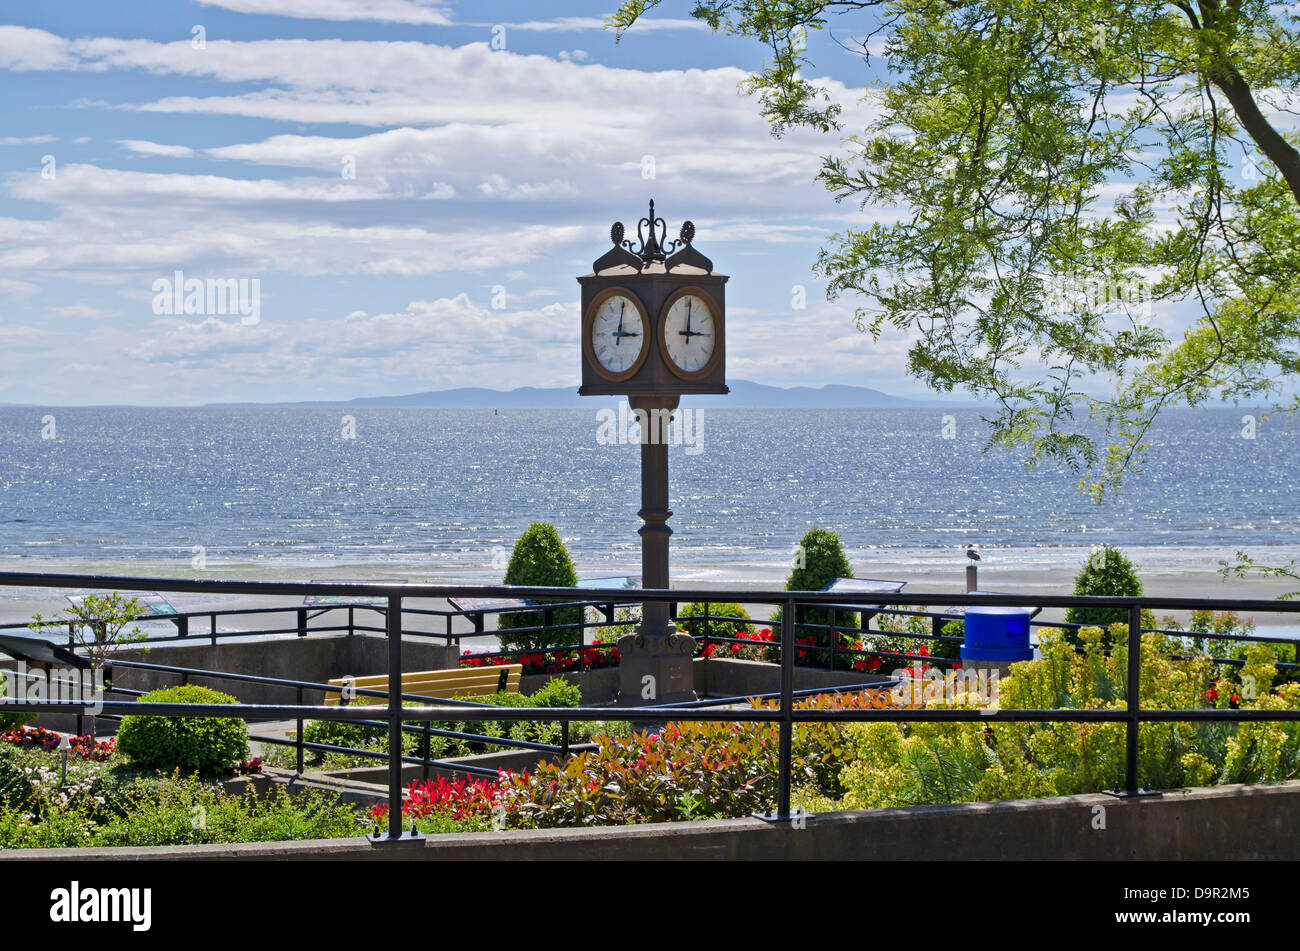 Seaside Aussichtspunkt mit Bänken, Blumen und eine Uhr.  In White Rock, British Columbia, Kanada. Blick auf den Pazifischen Ozean. Stockfoto